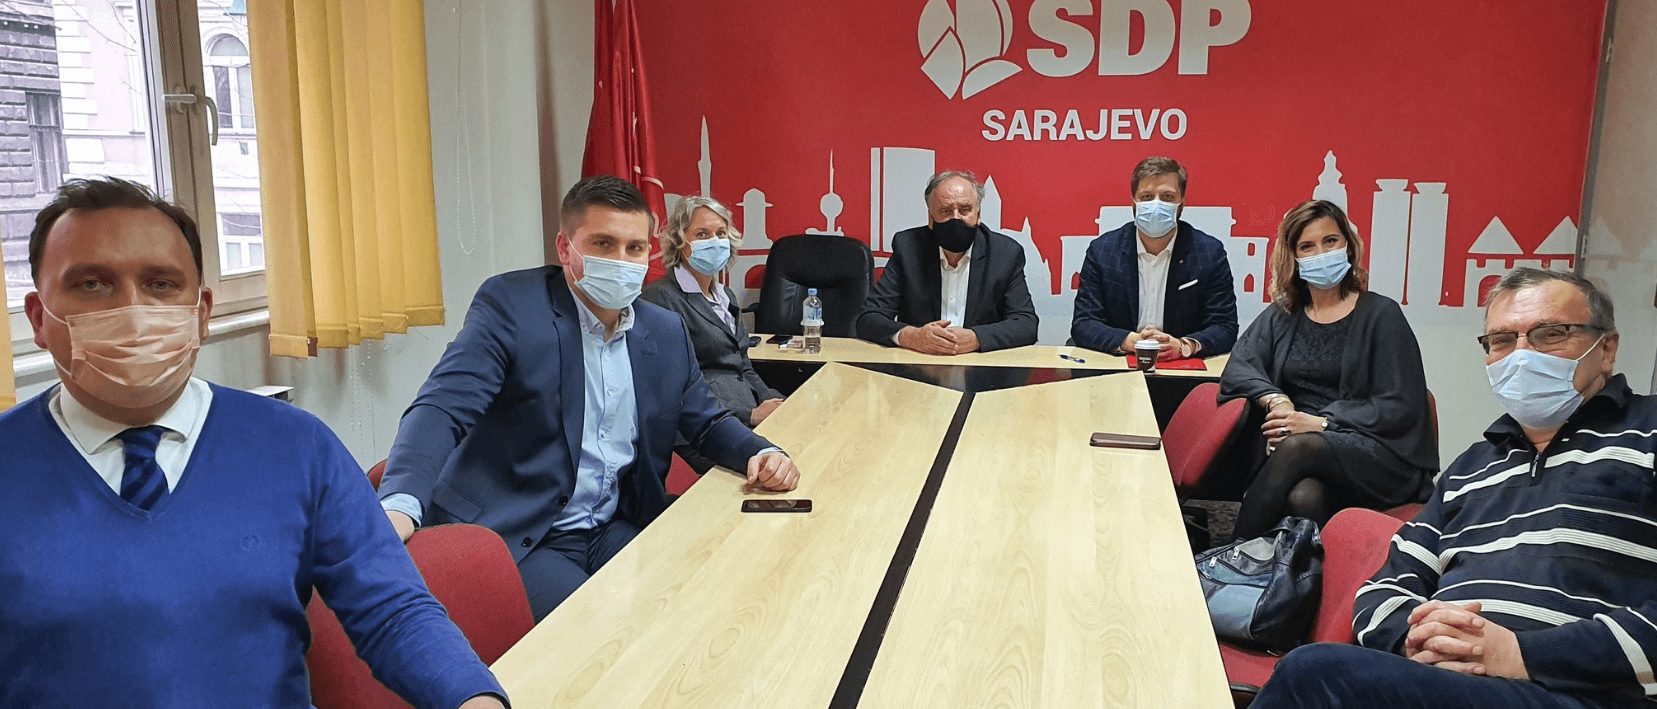 Potpisane izjave o prihvatanju kandidatura za Gradsko vijeće Grada Sarajeva